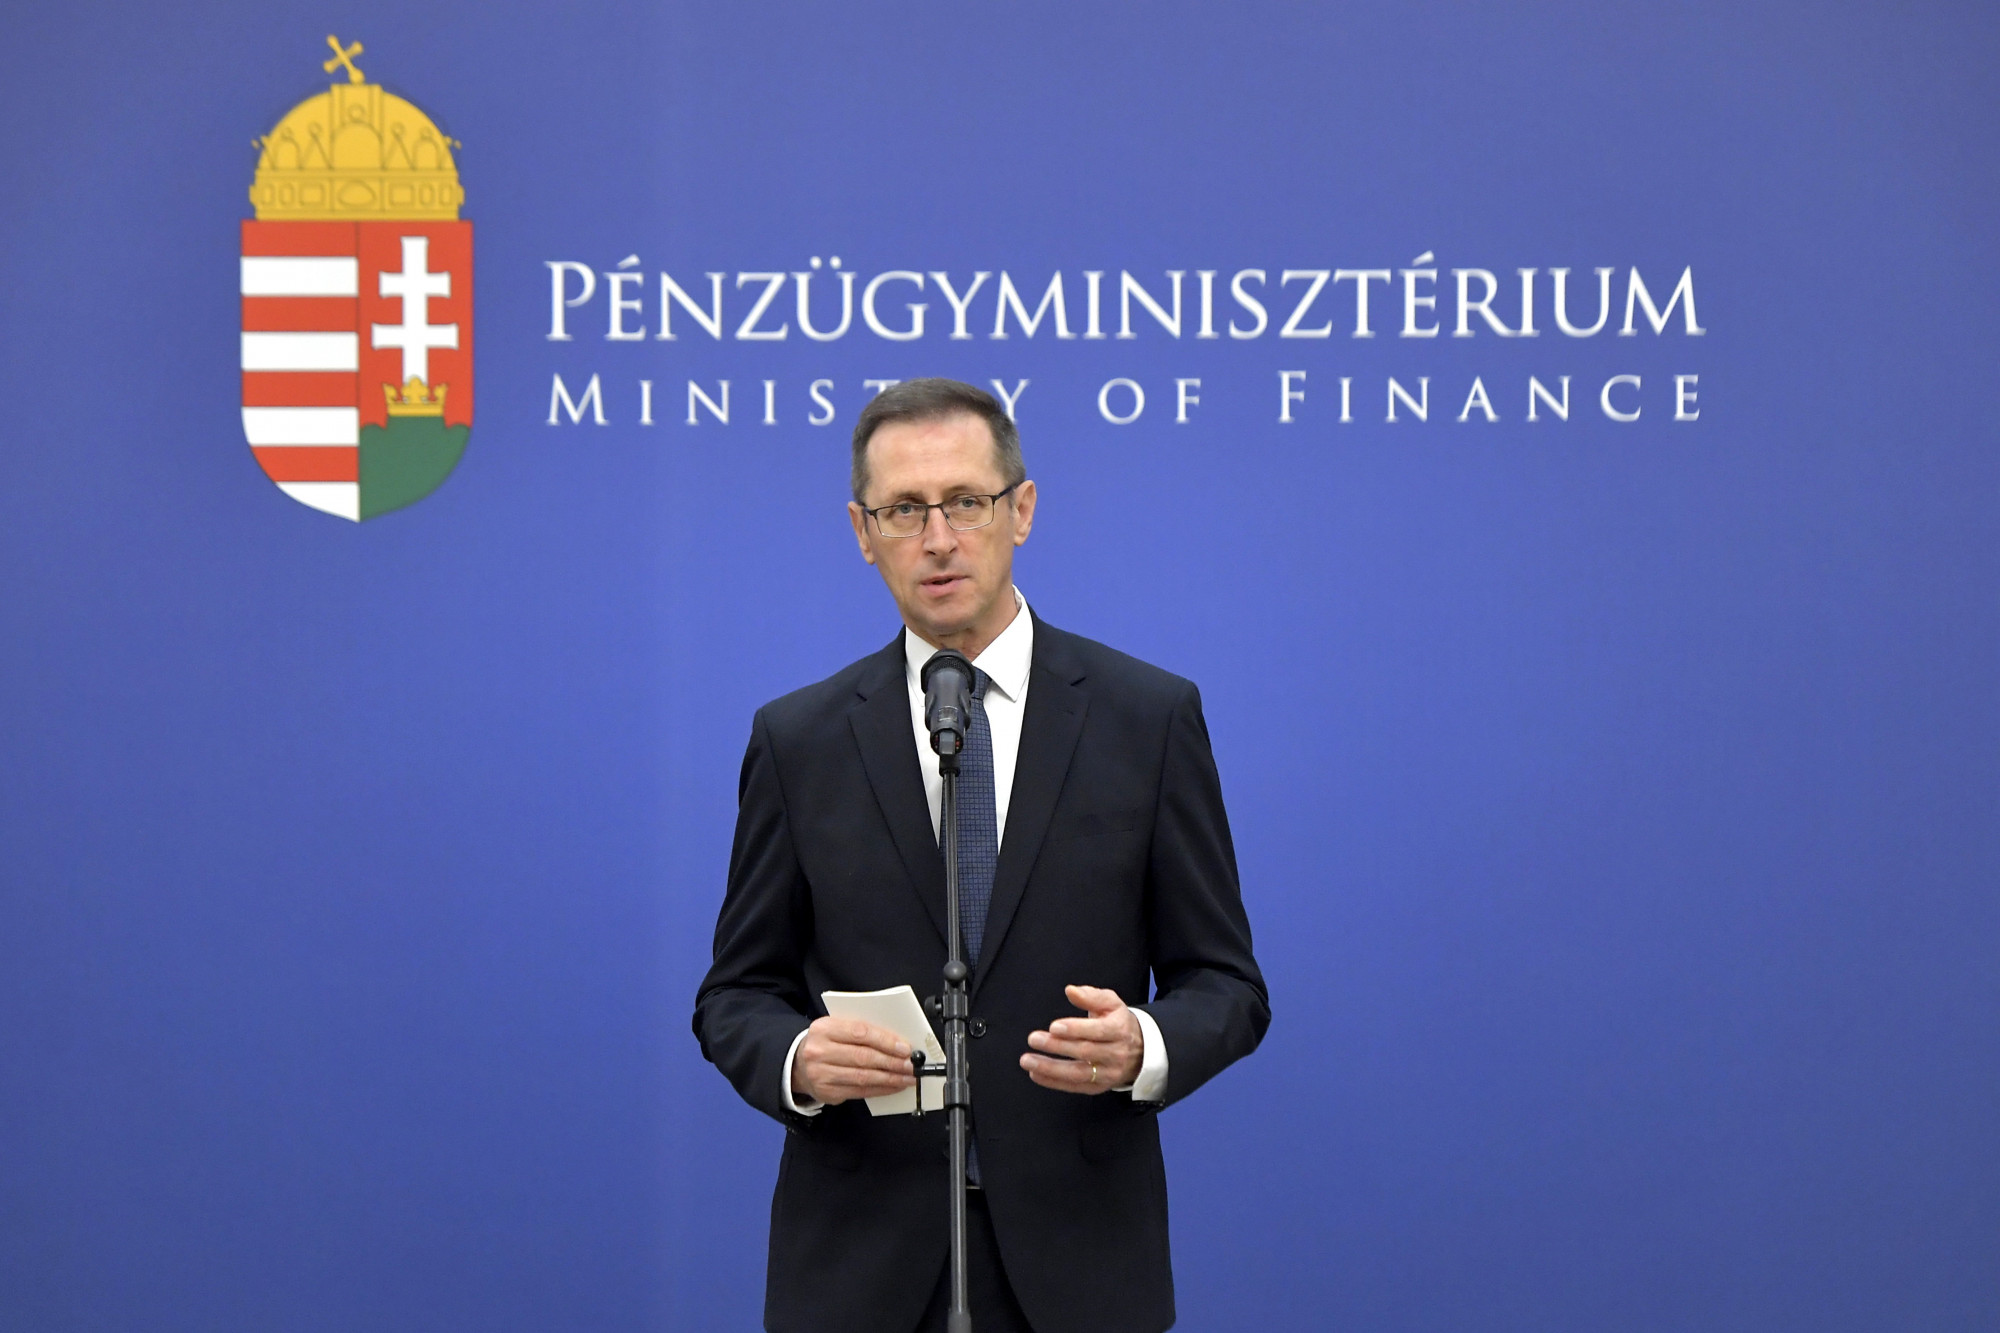 Varga Mihály: A csökkenő bevételeket nem új adókkal, hanem a gazdaság fehérítésével kell ellensúlyozni